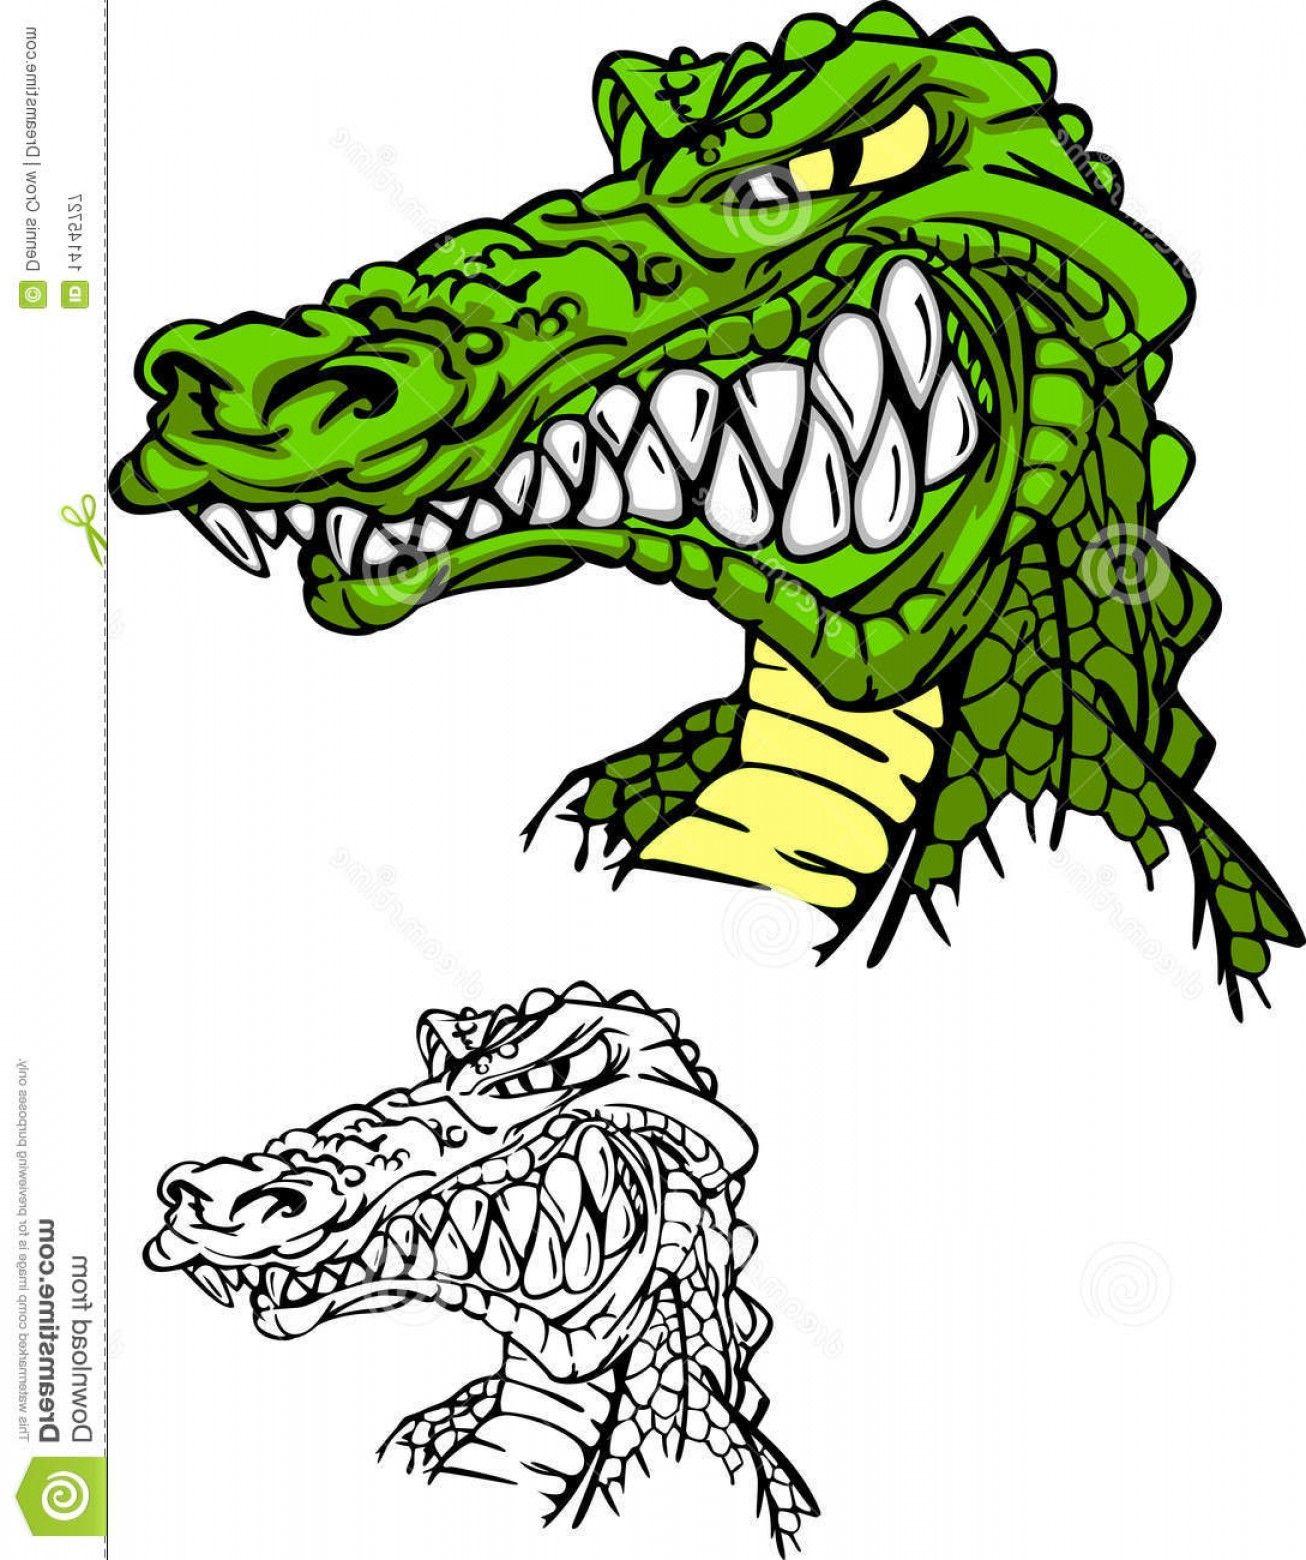 Alligator Head Logo - Royalty Free graphy Alligator Gator Head Logo Image